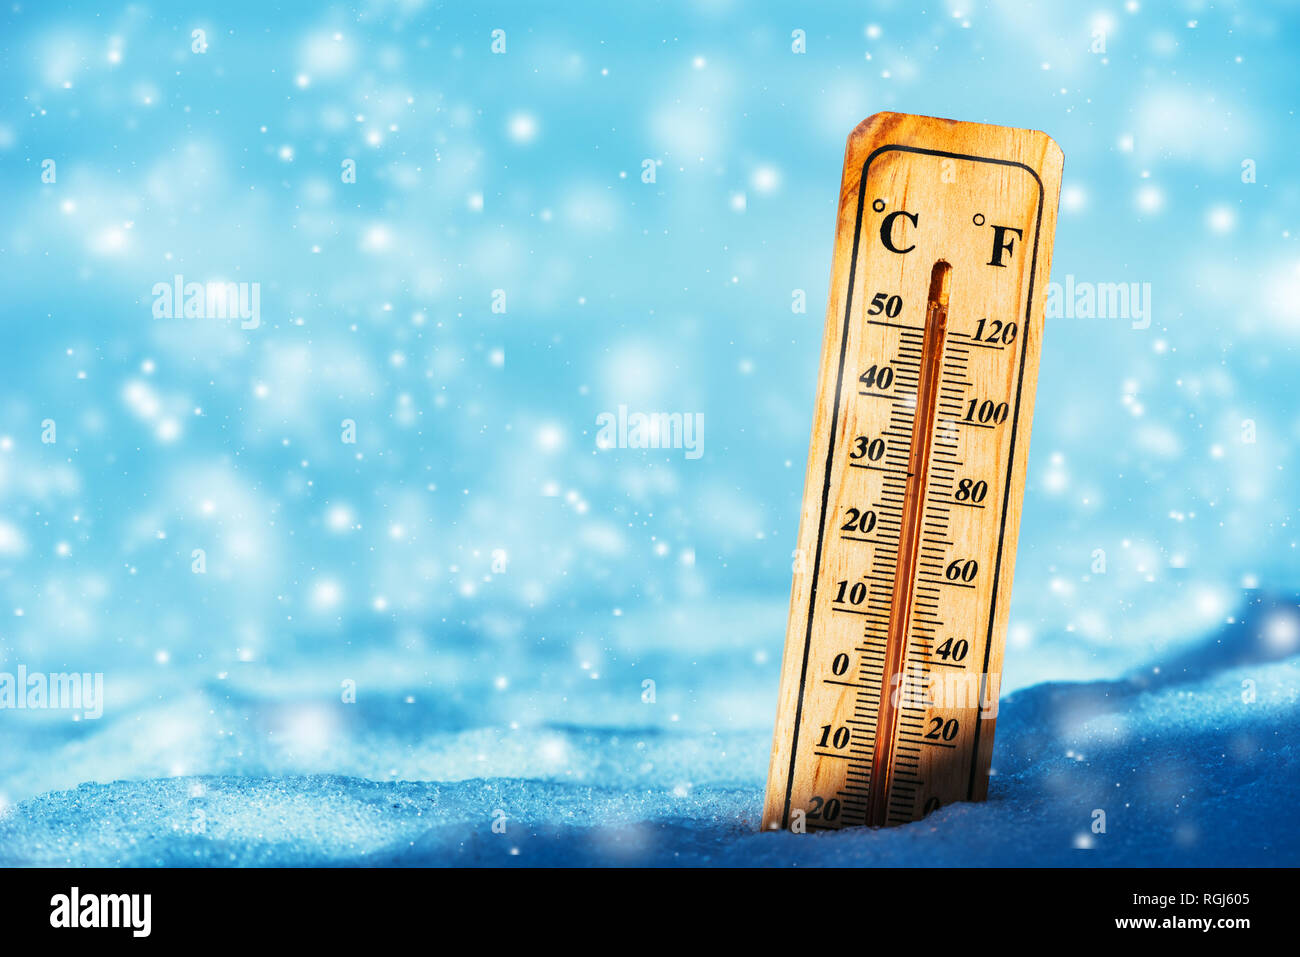 Temperatura en frío por debajo de cero en el termómetro en la nieve durante la temporada de invierno Foto de stock